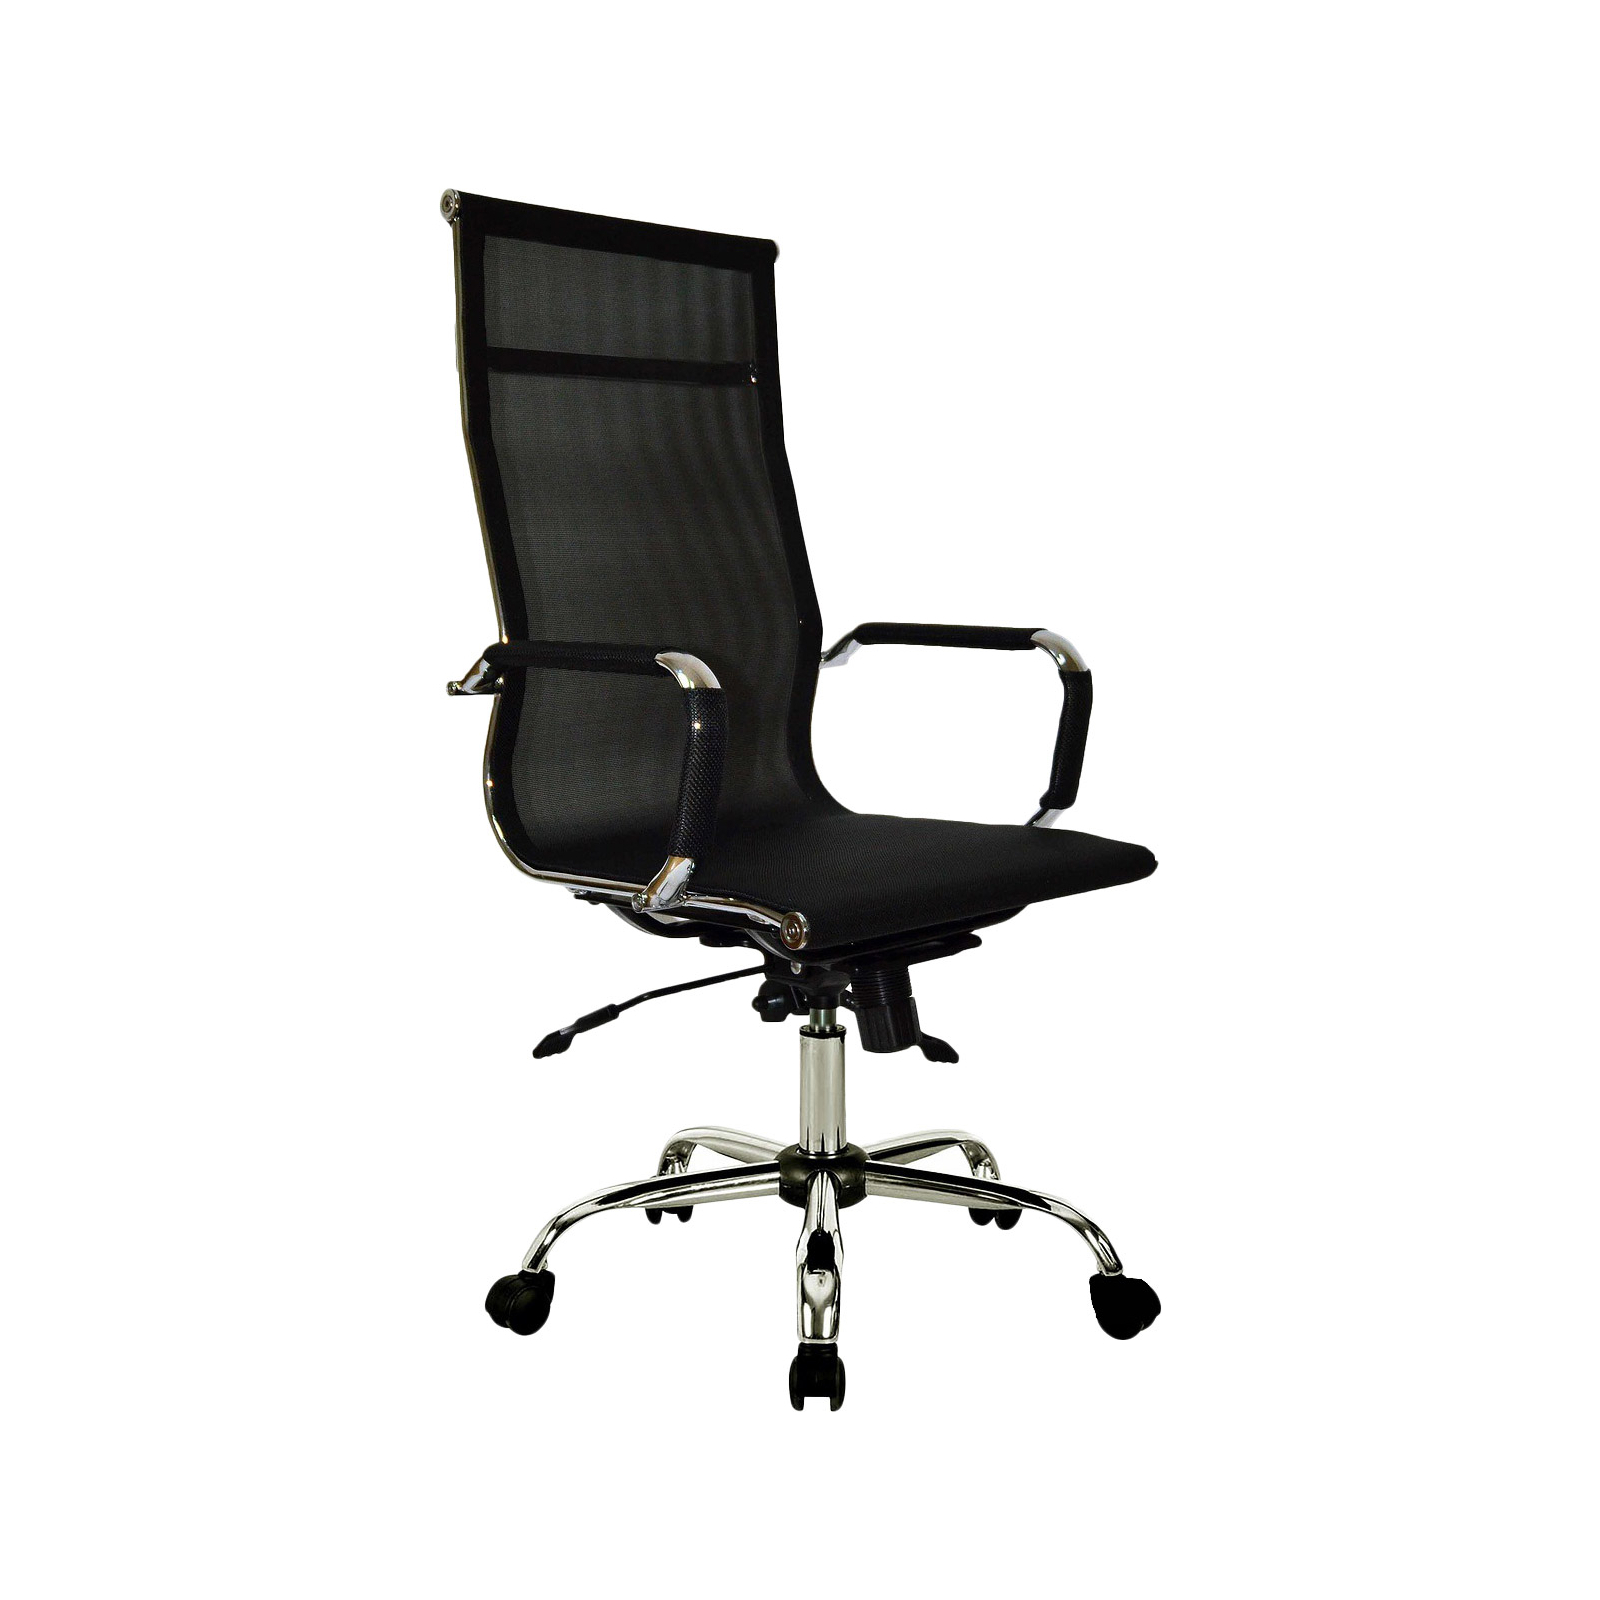 Офисное кресло Примтекс плюс Oscar Lite DM-01 черный (Oscar Lite DM-01)